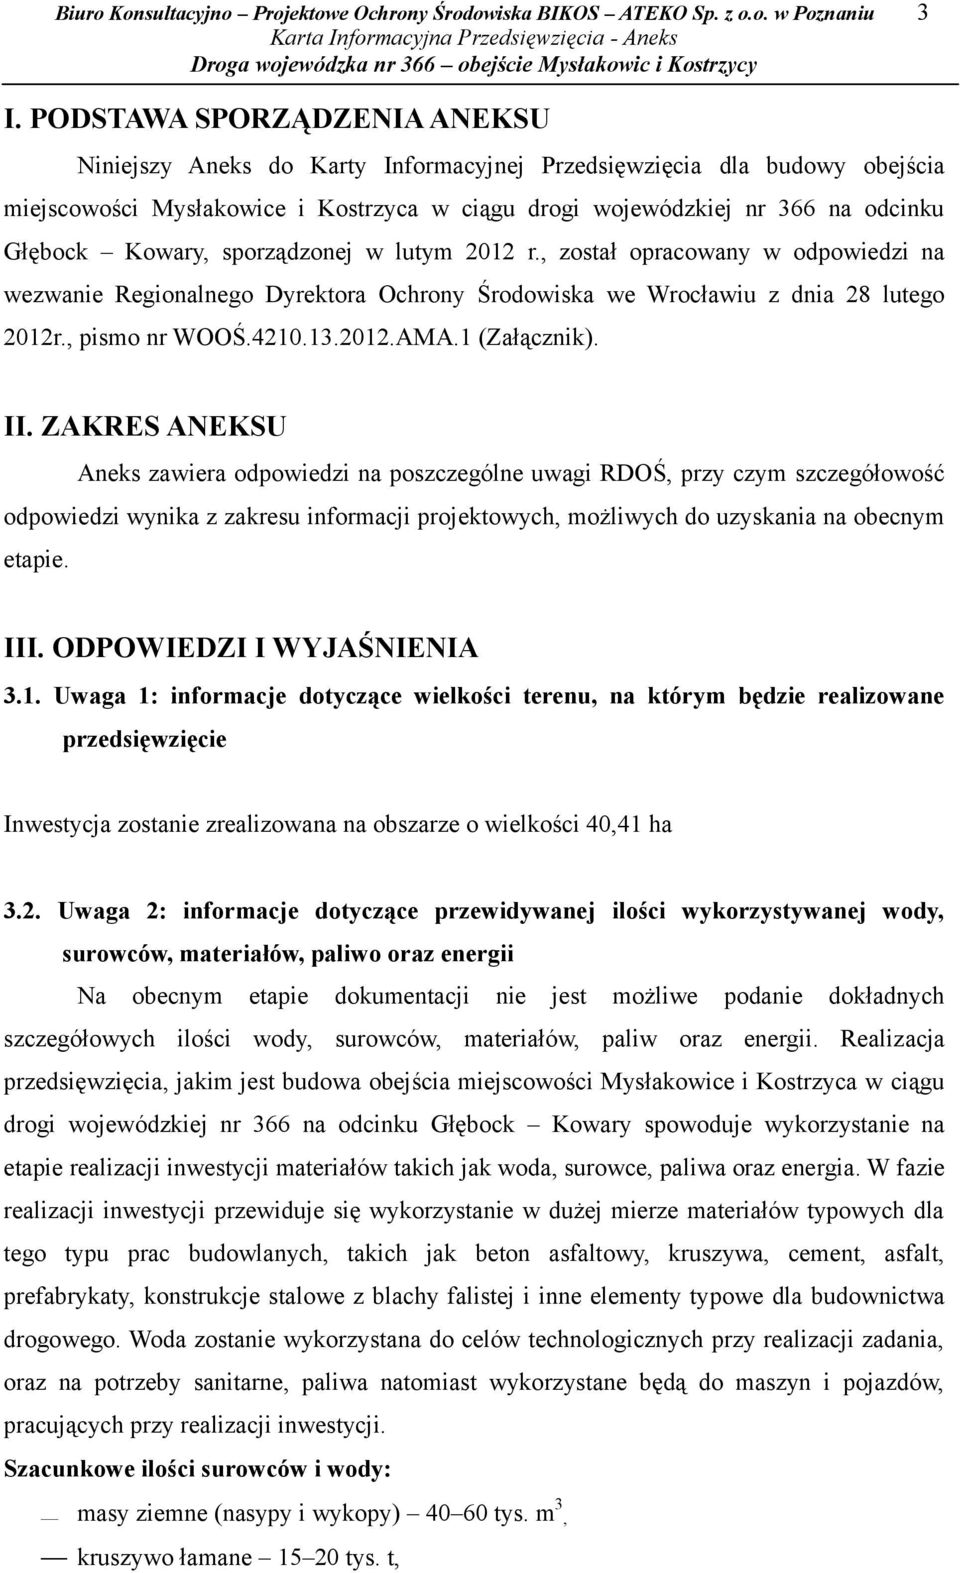 Kowary, sporządzonej w lutym 2012 r., został opracowany w odpowiedzi na wezwanie Regionalnego Dyrektora Ochrony Środowiska we Wrocławiu z dnia 28 lutego 2012r., pismo nr WOOŚ.4210.13.2012.AMA.